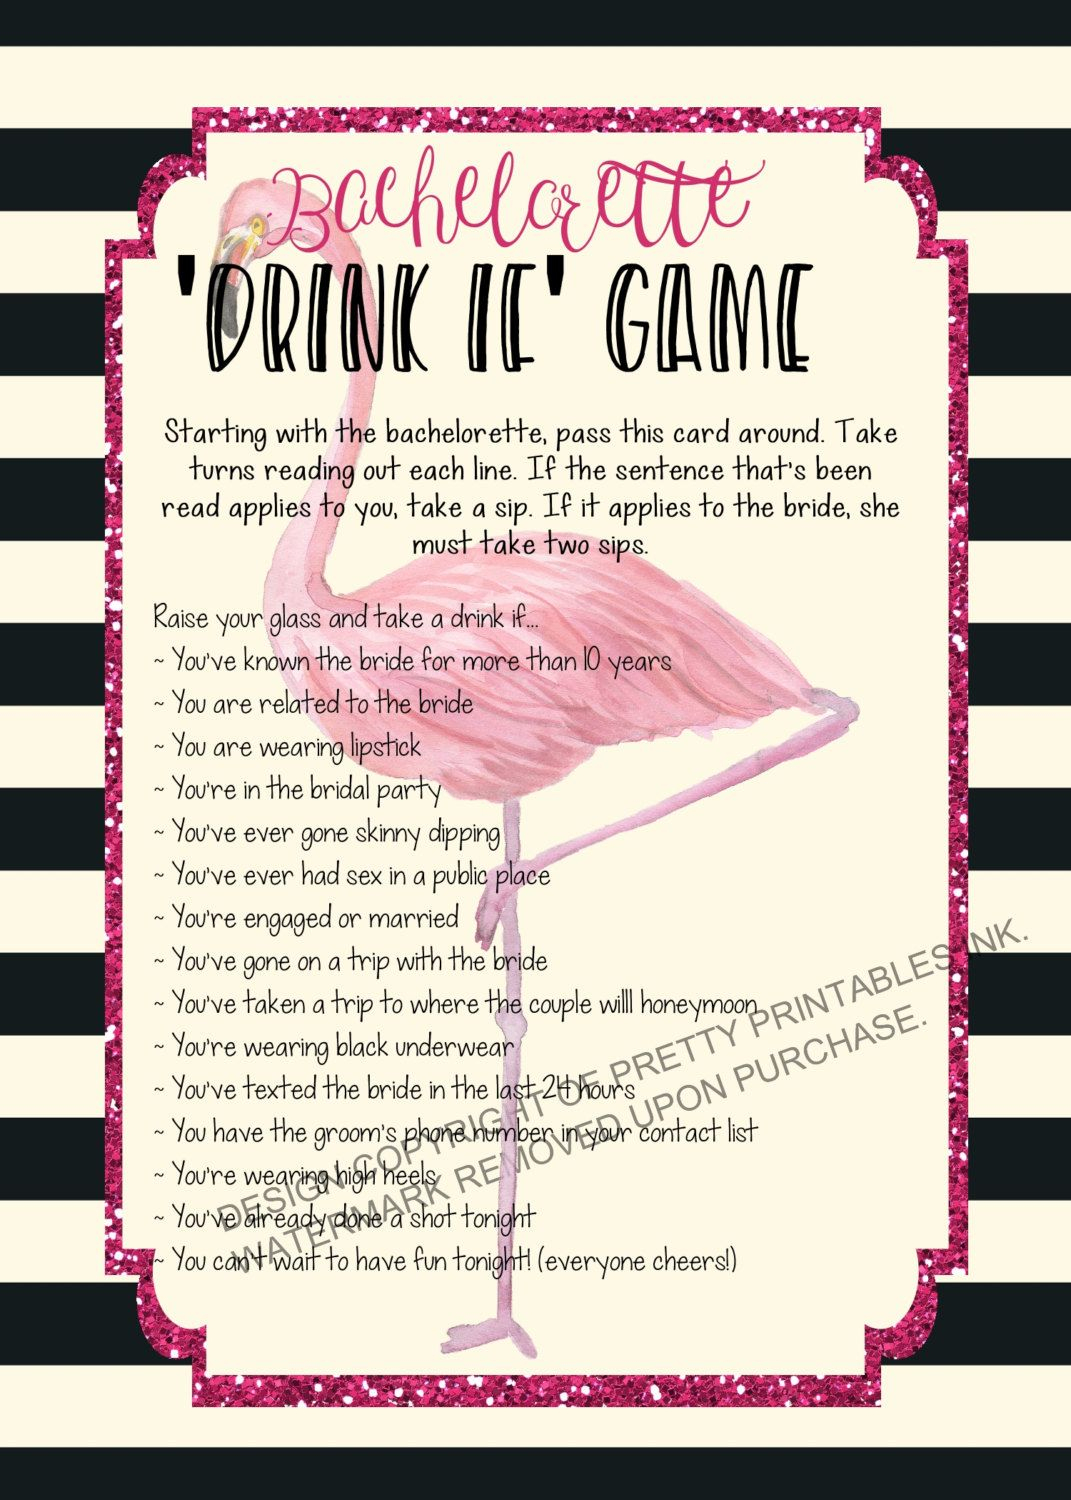 Printable Bachelorette Game/ Bachelorette Drinking Game - Free Printable Bachelorette Party Games